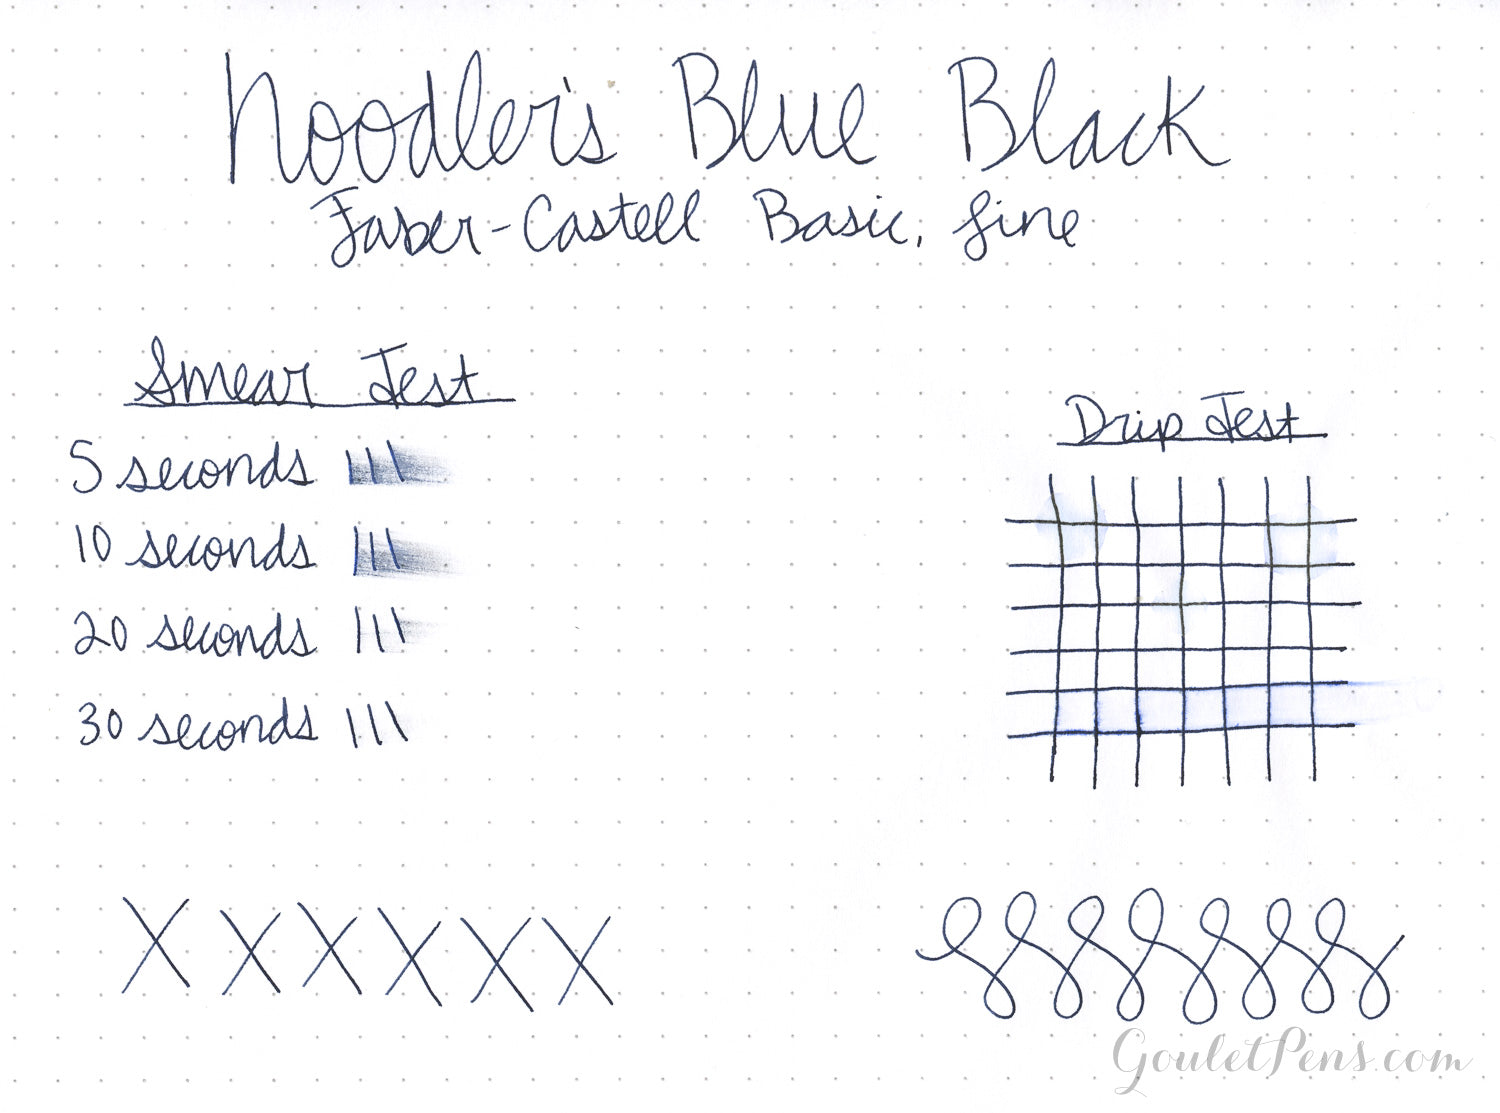 Noodler's Legal Blue - 3oz Bottled Ink — Roots & Jones